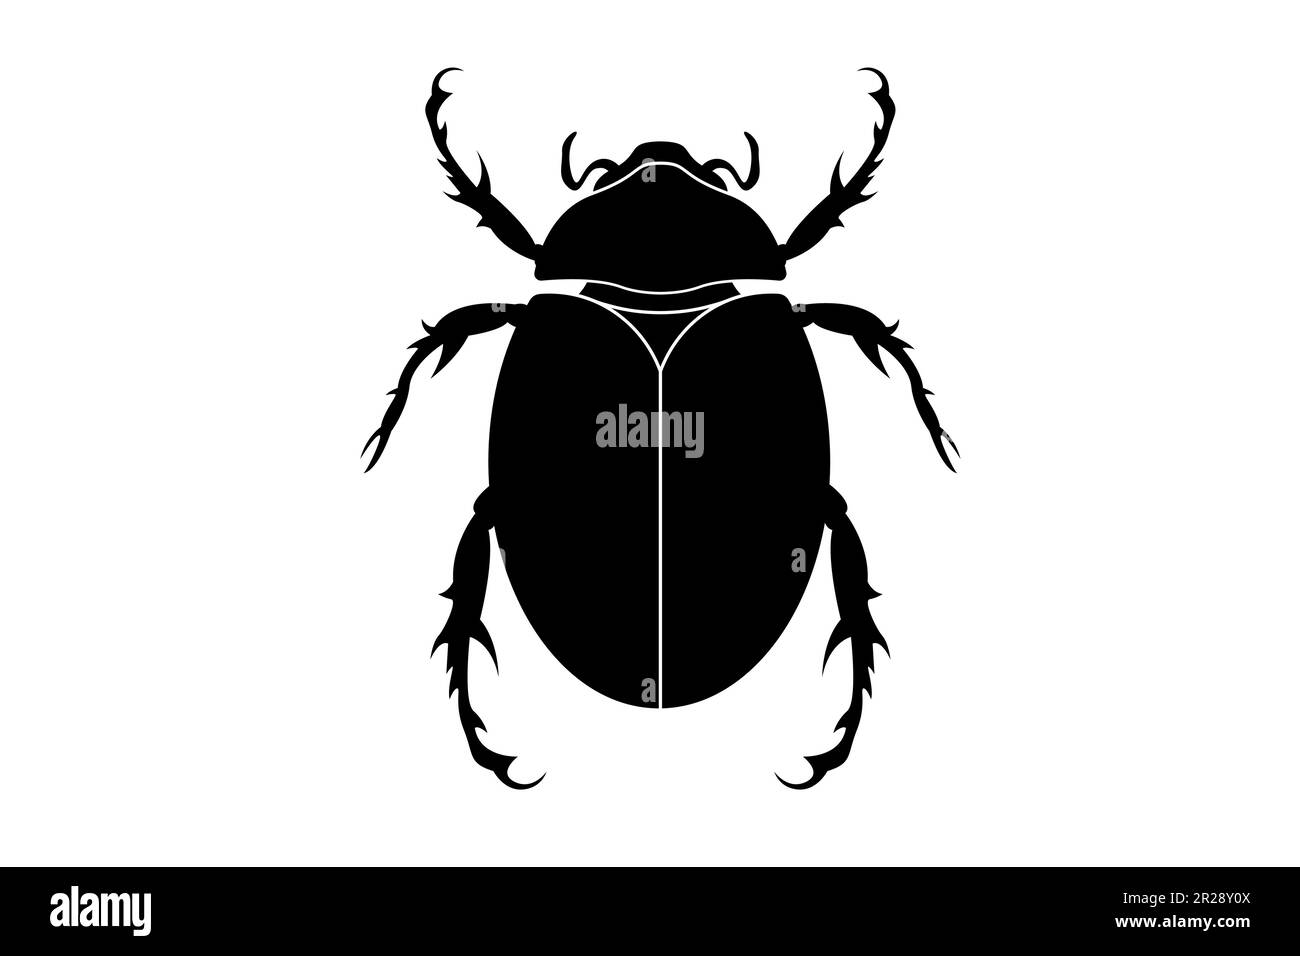 silueta negra de un escarabajo escarabajo, insecto vector aislado sobre un fondo blanco Ilustración del Vector